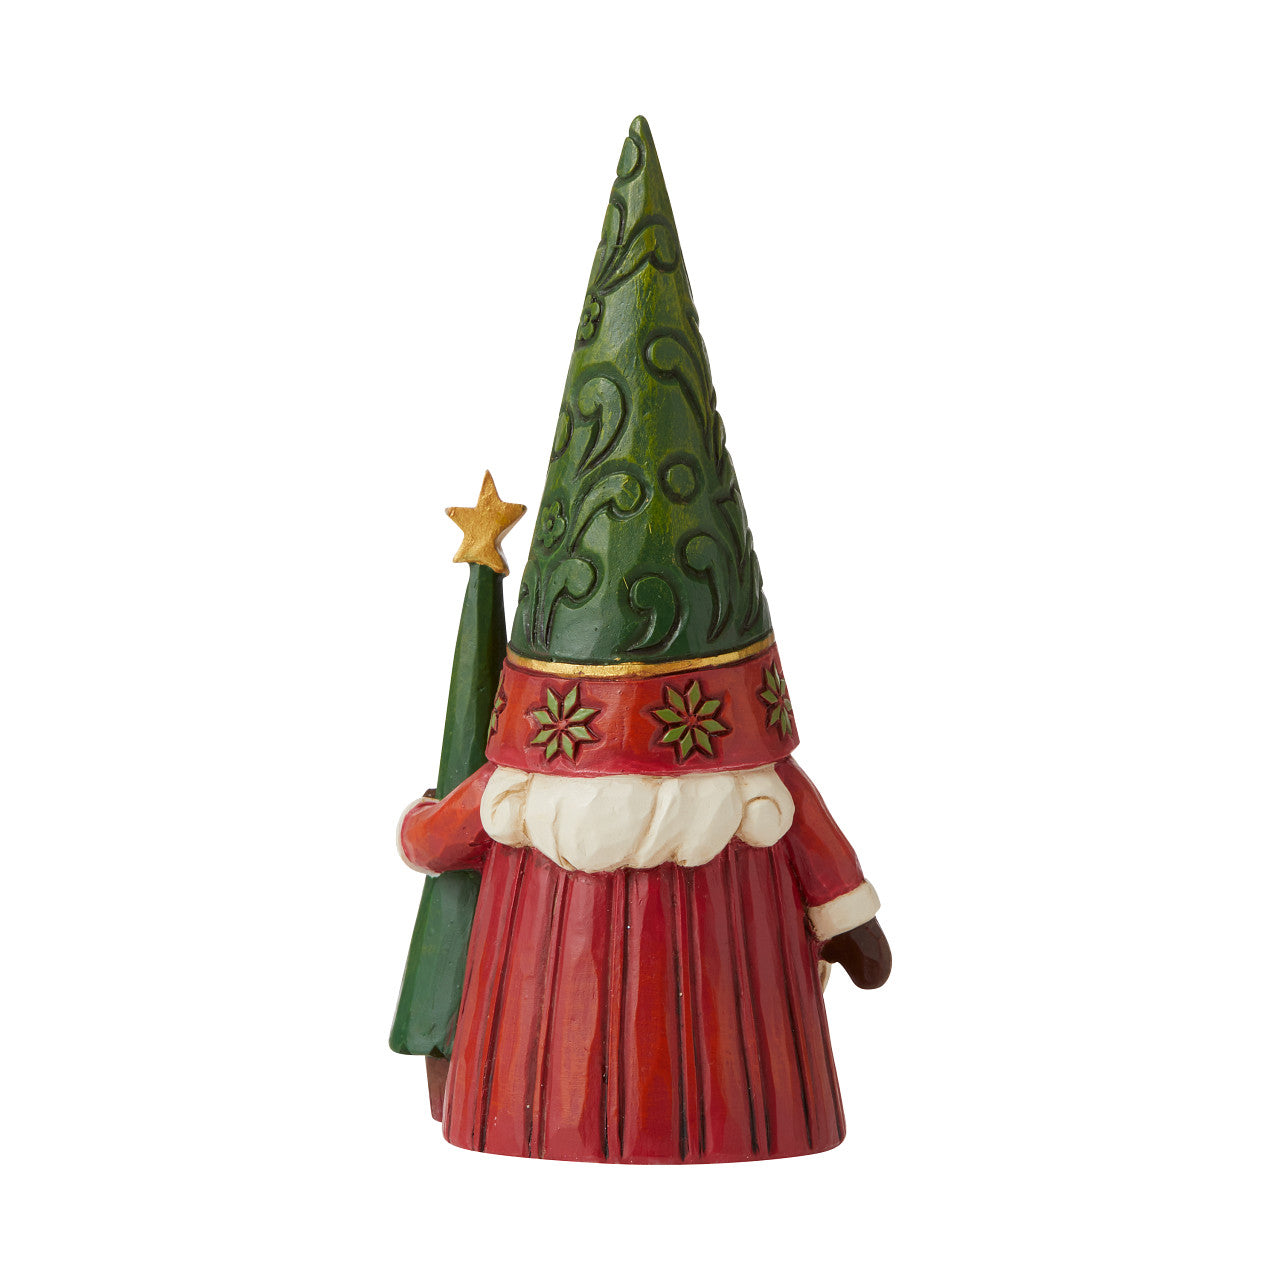 Tree-mendous Tidings - Christmas Gnome With Tree Figurine